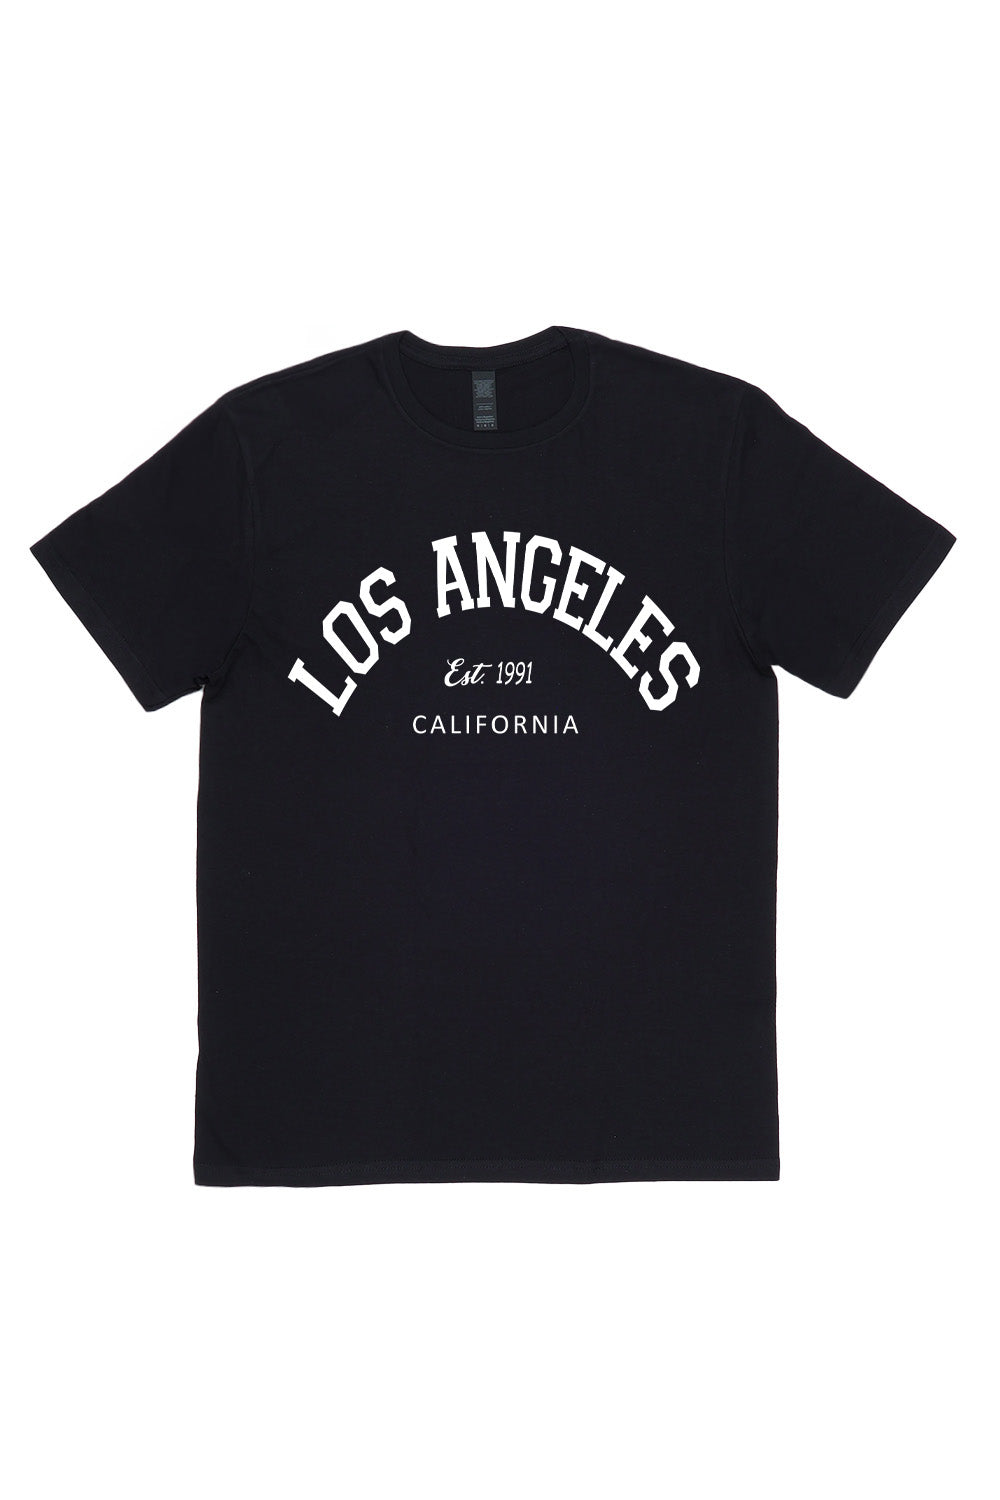 Los Angeles T-Shirt in Black (Custom Packs)